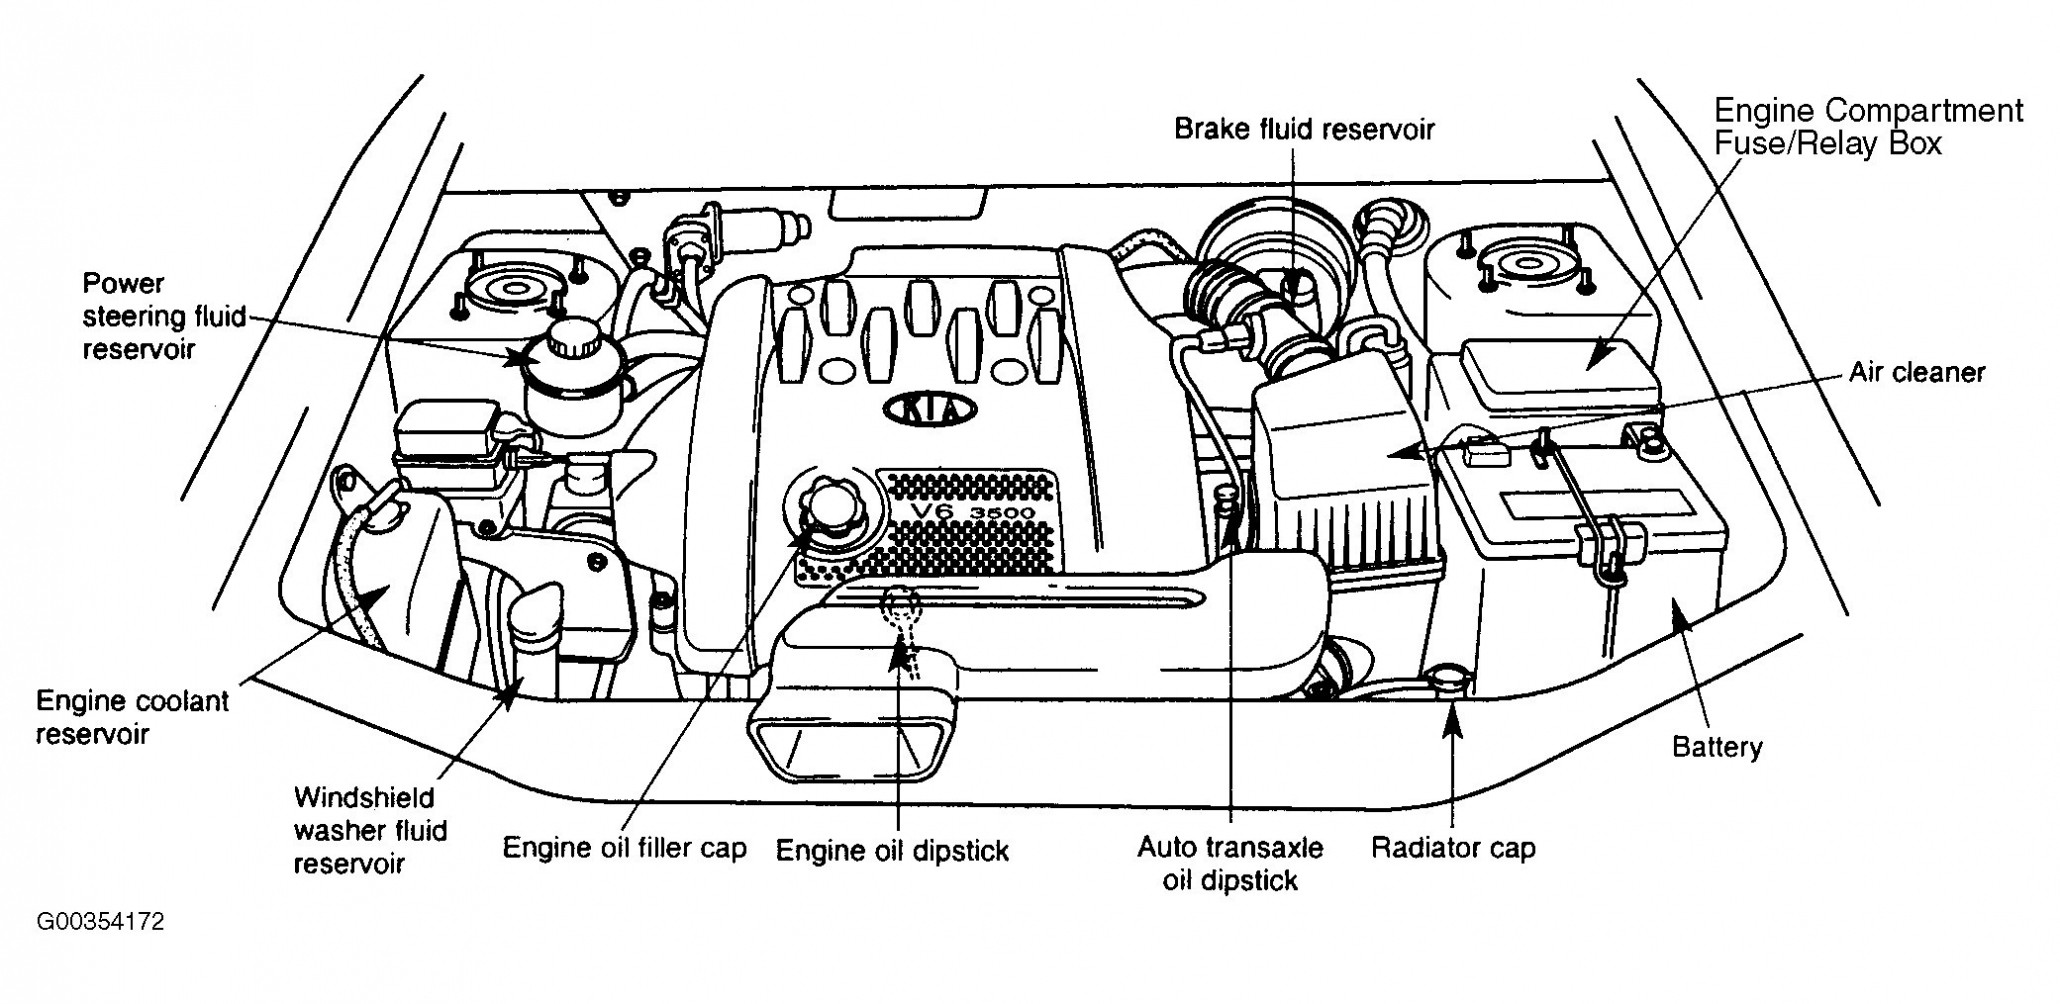 2001 Kia Spectra Engine Diagram Kia Spectra Engine Diagram Auto Electrical Wiring Diagram • – Kia Of 2001 Kia Spectra Engine Diagram